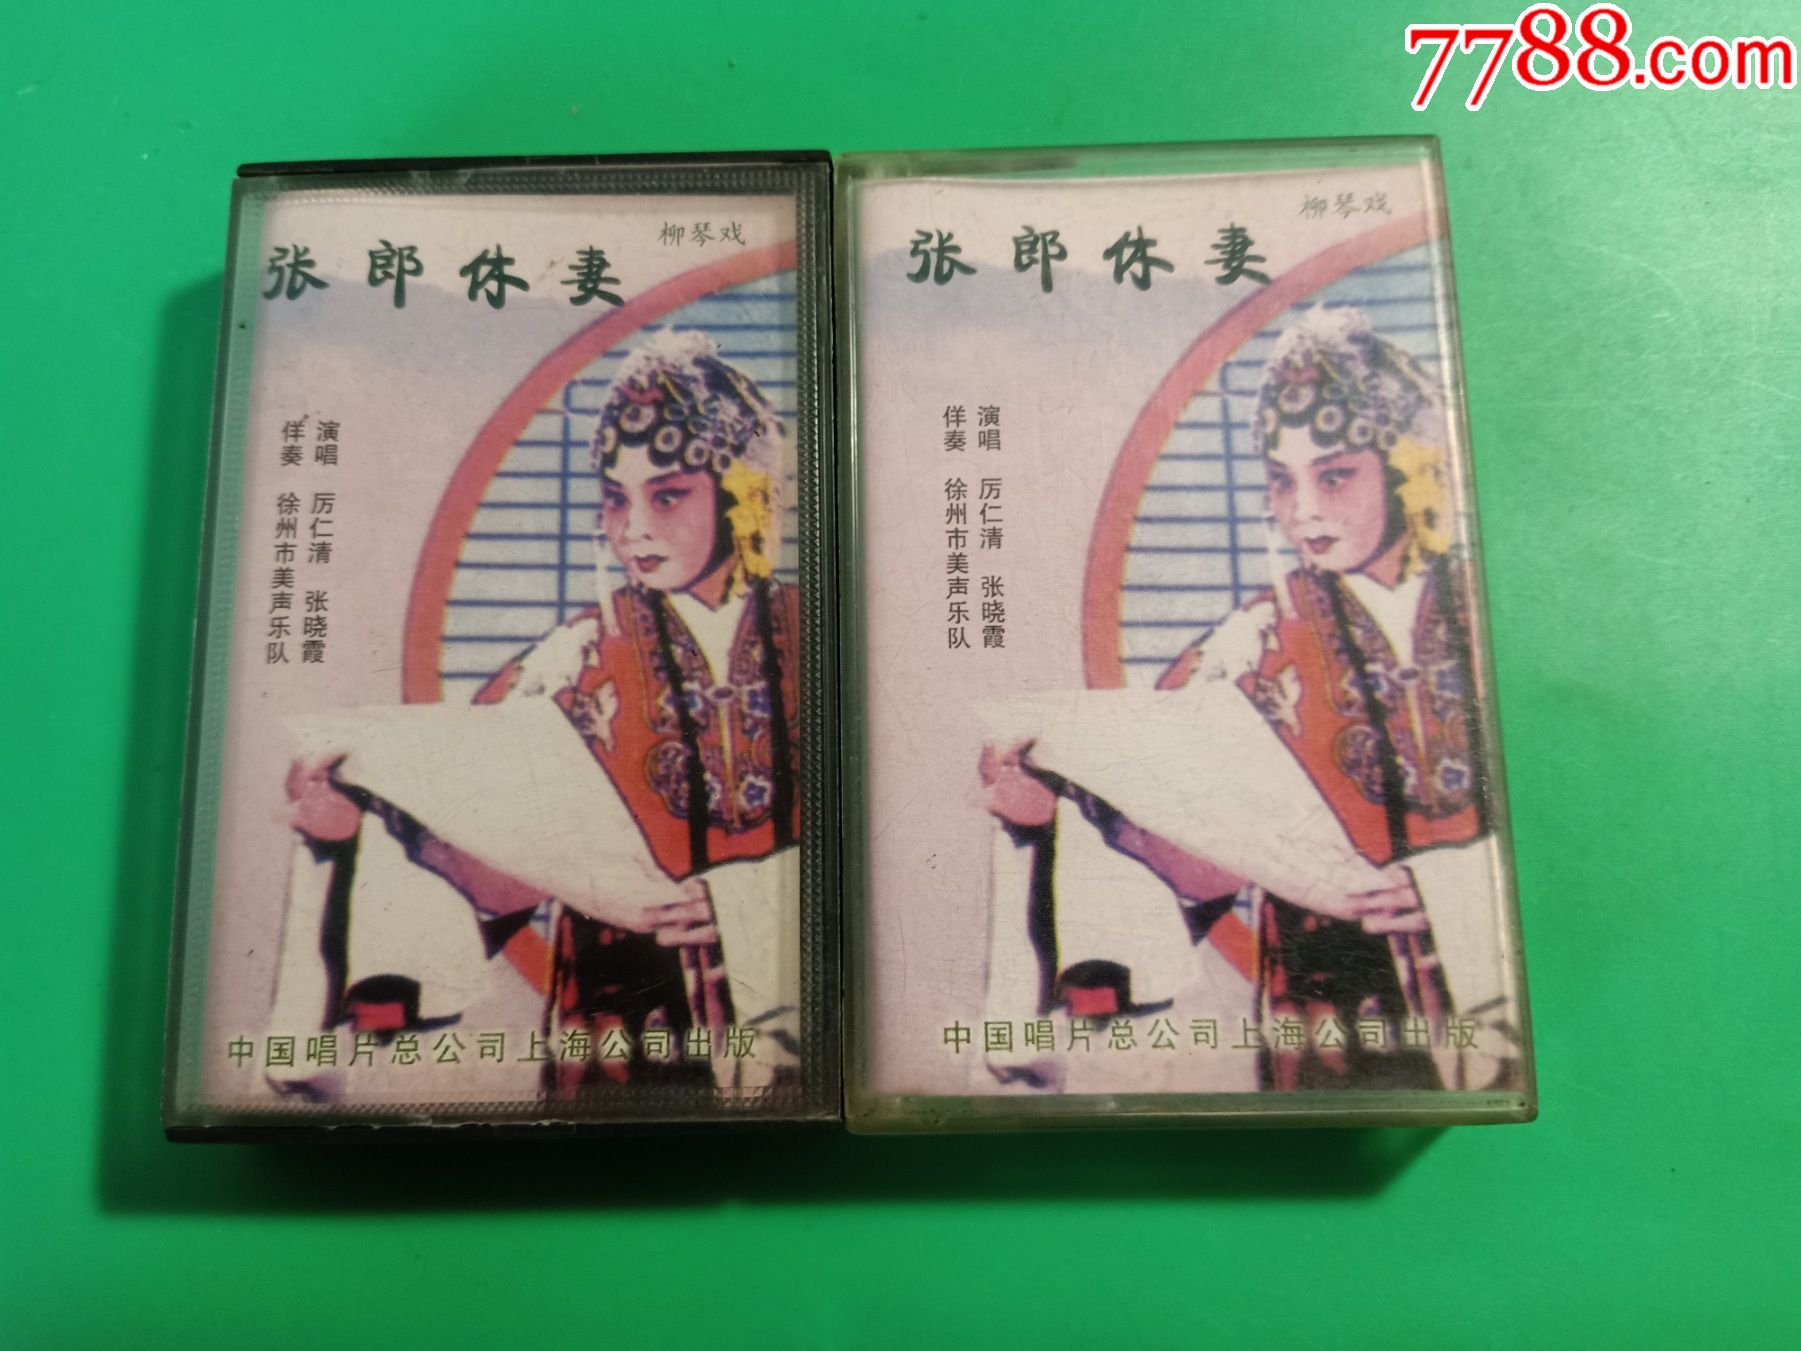 柳琴戏《张郎休妻》(1,2集)2磁带,厉仁清,张晓霞演唱